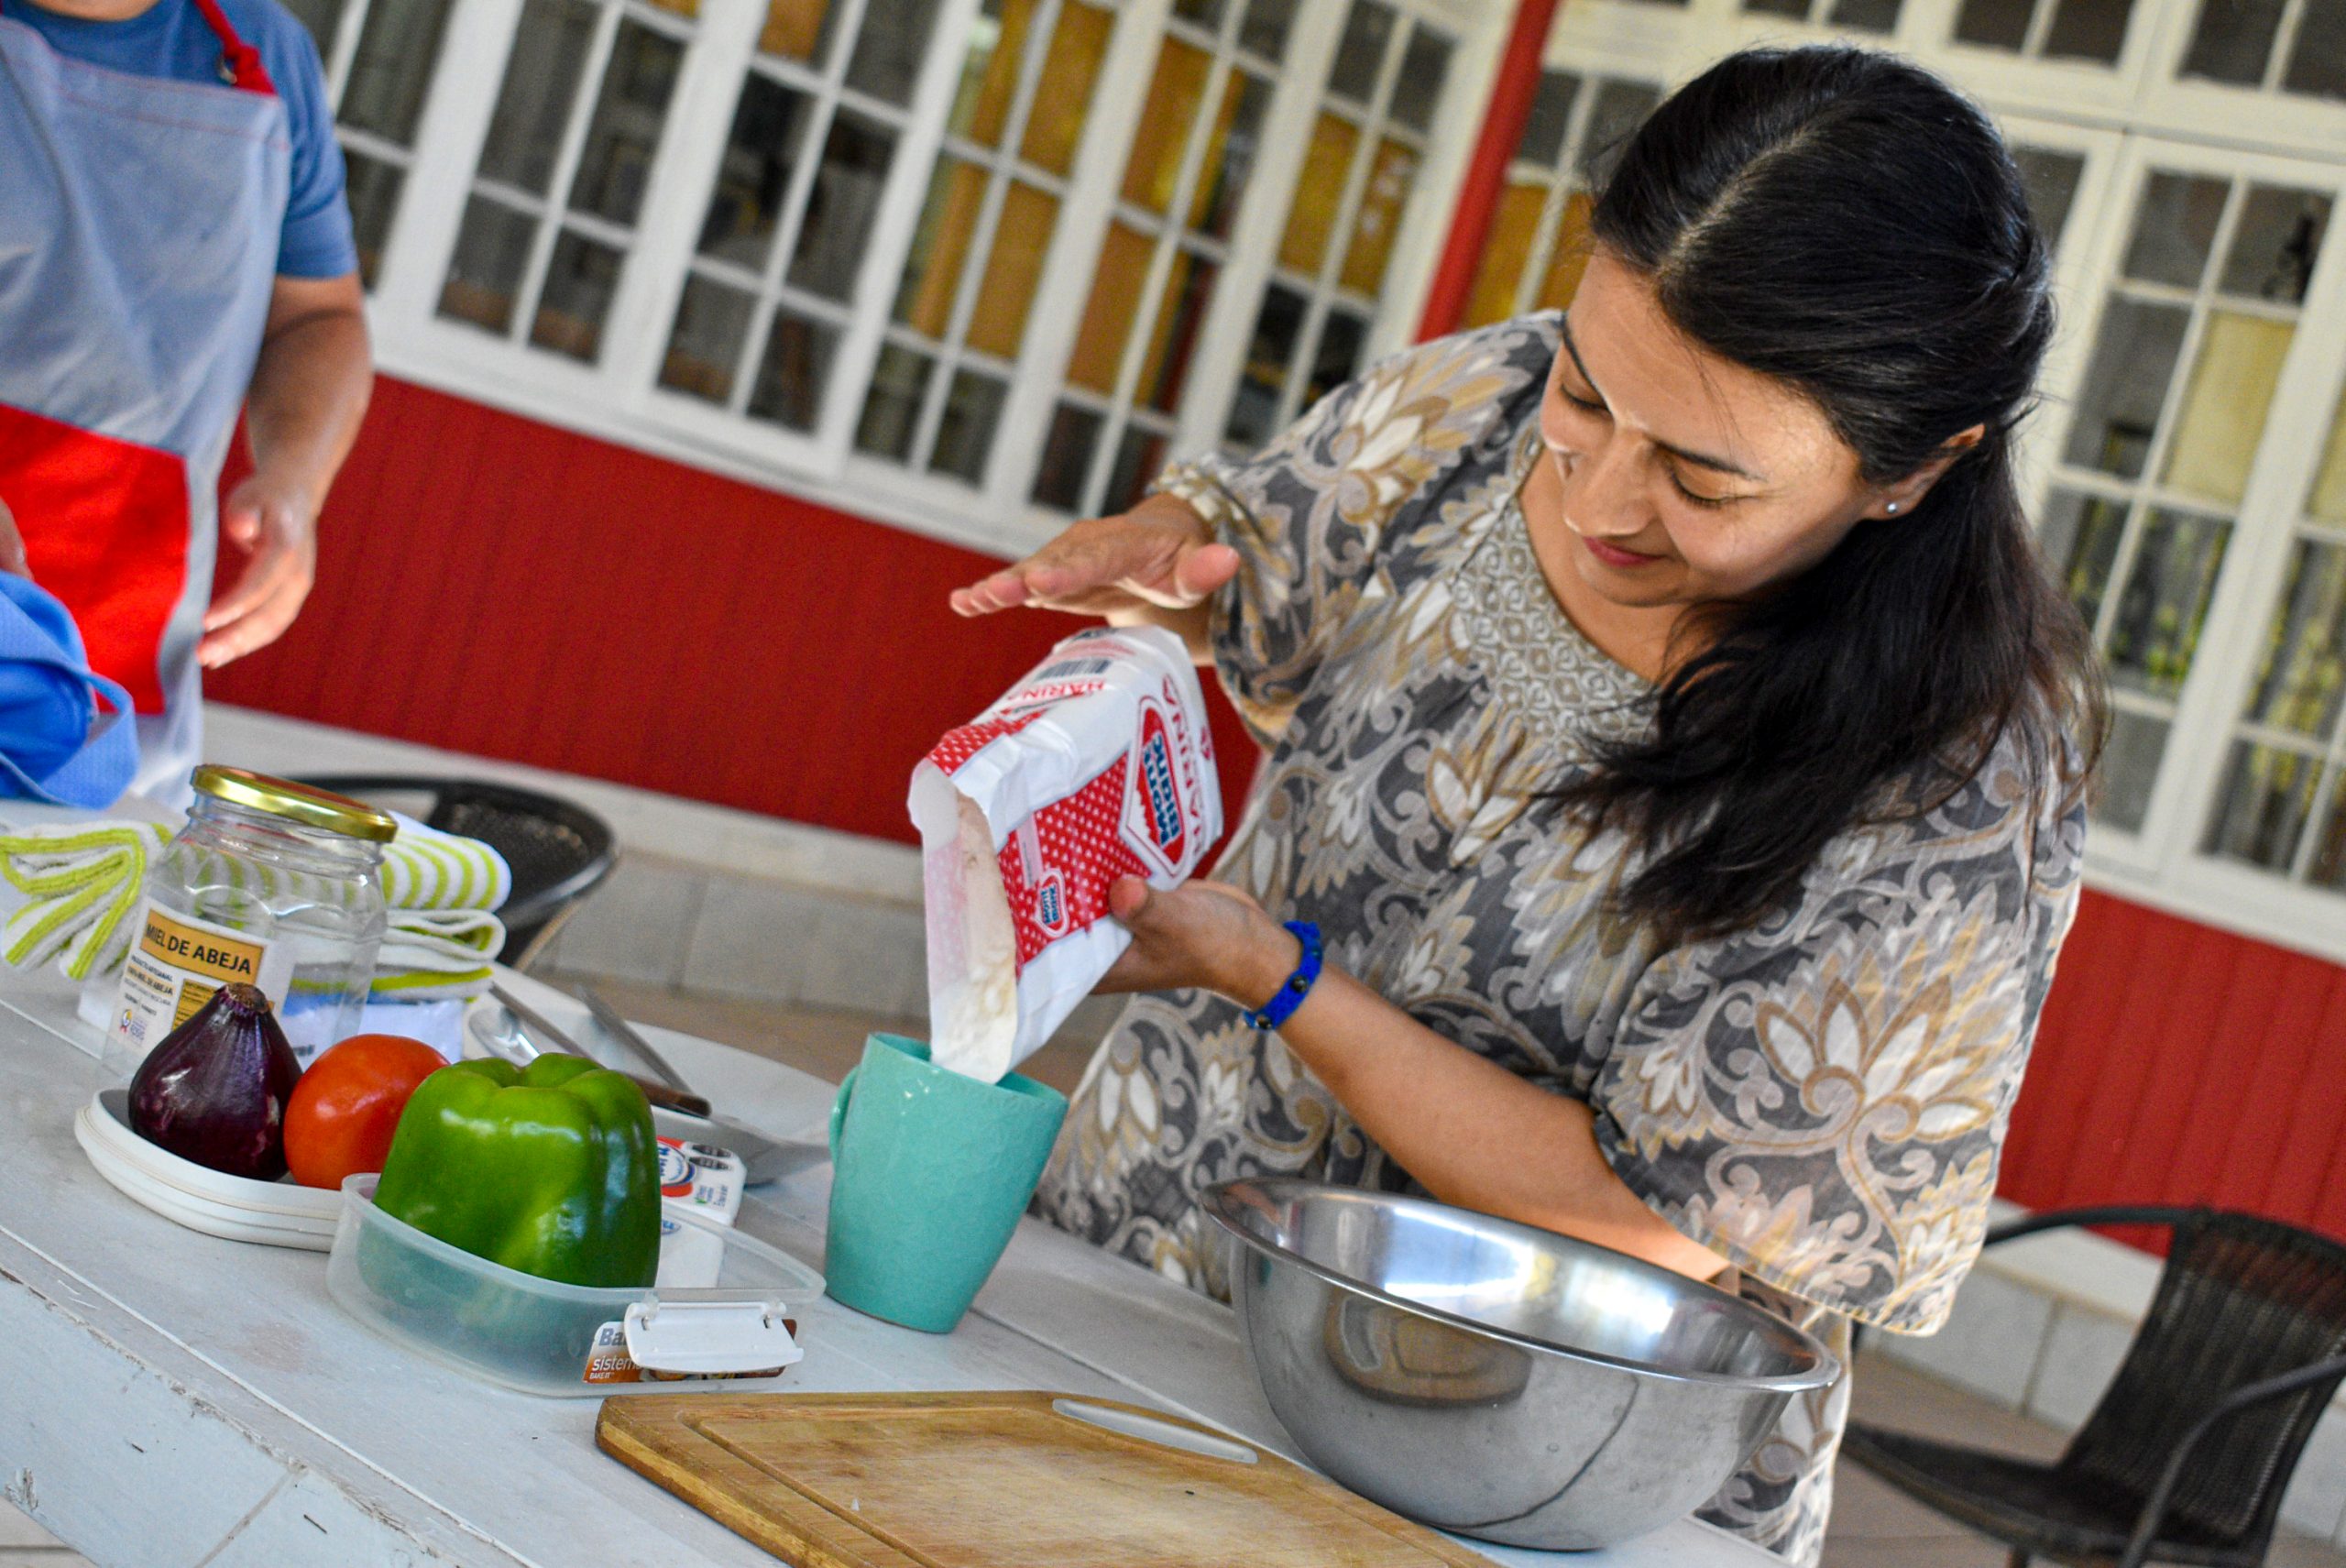 Hierbas medicinales y comida mapuche parten talleres gratuitos de febrero en Quillota 